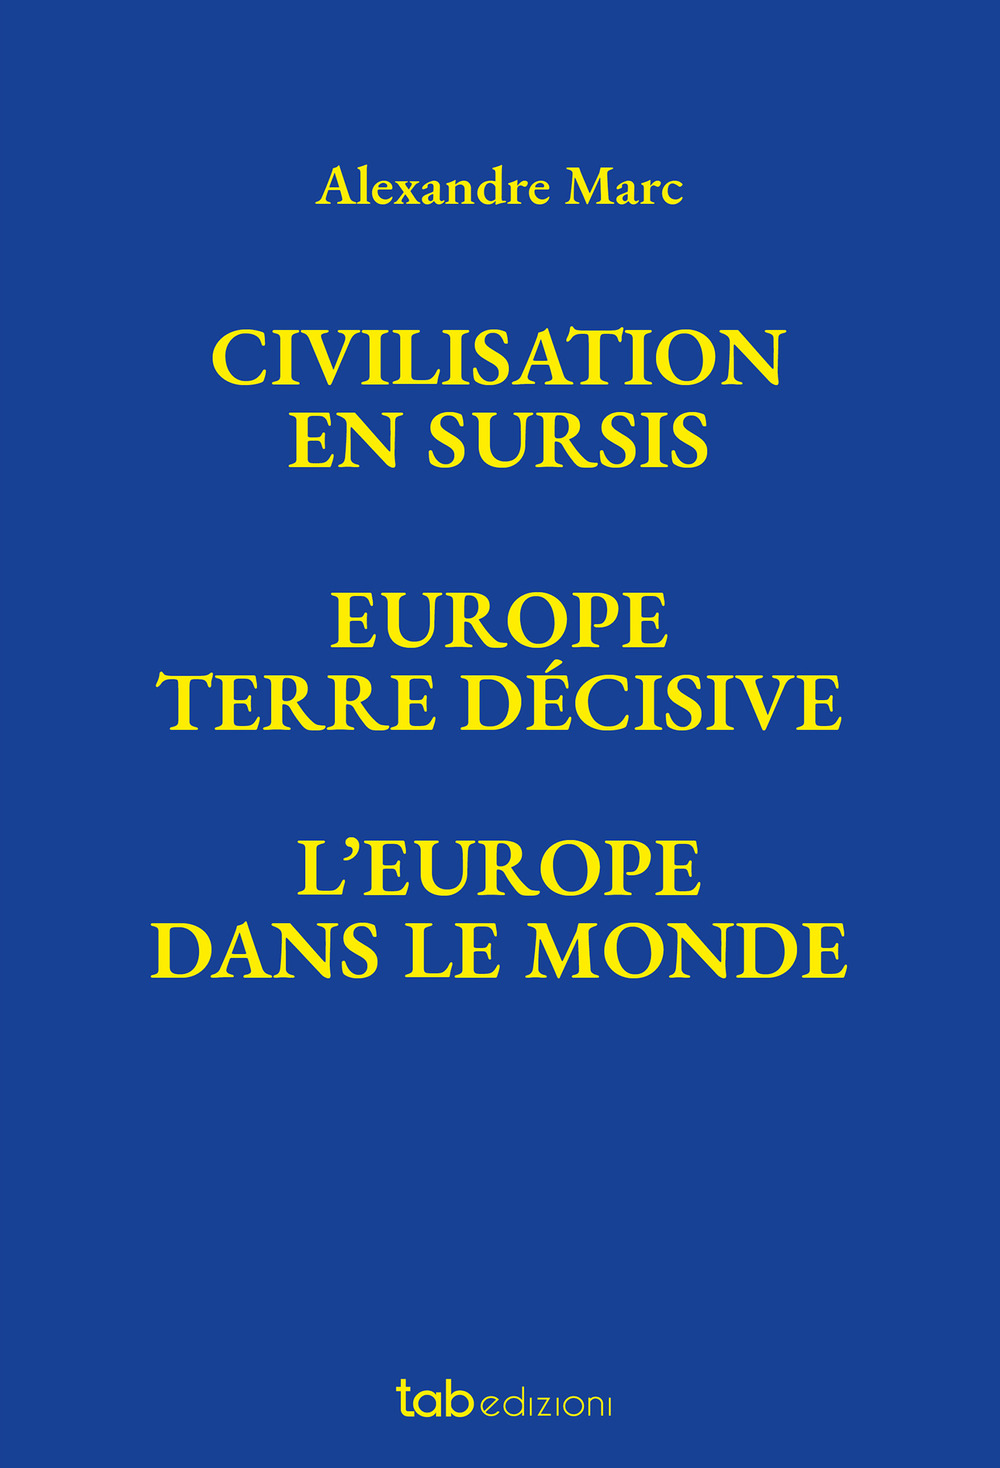 Civilisation en sursis Europe. Terre décisive. L'Europe dans le monde